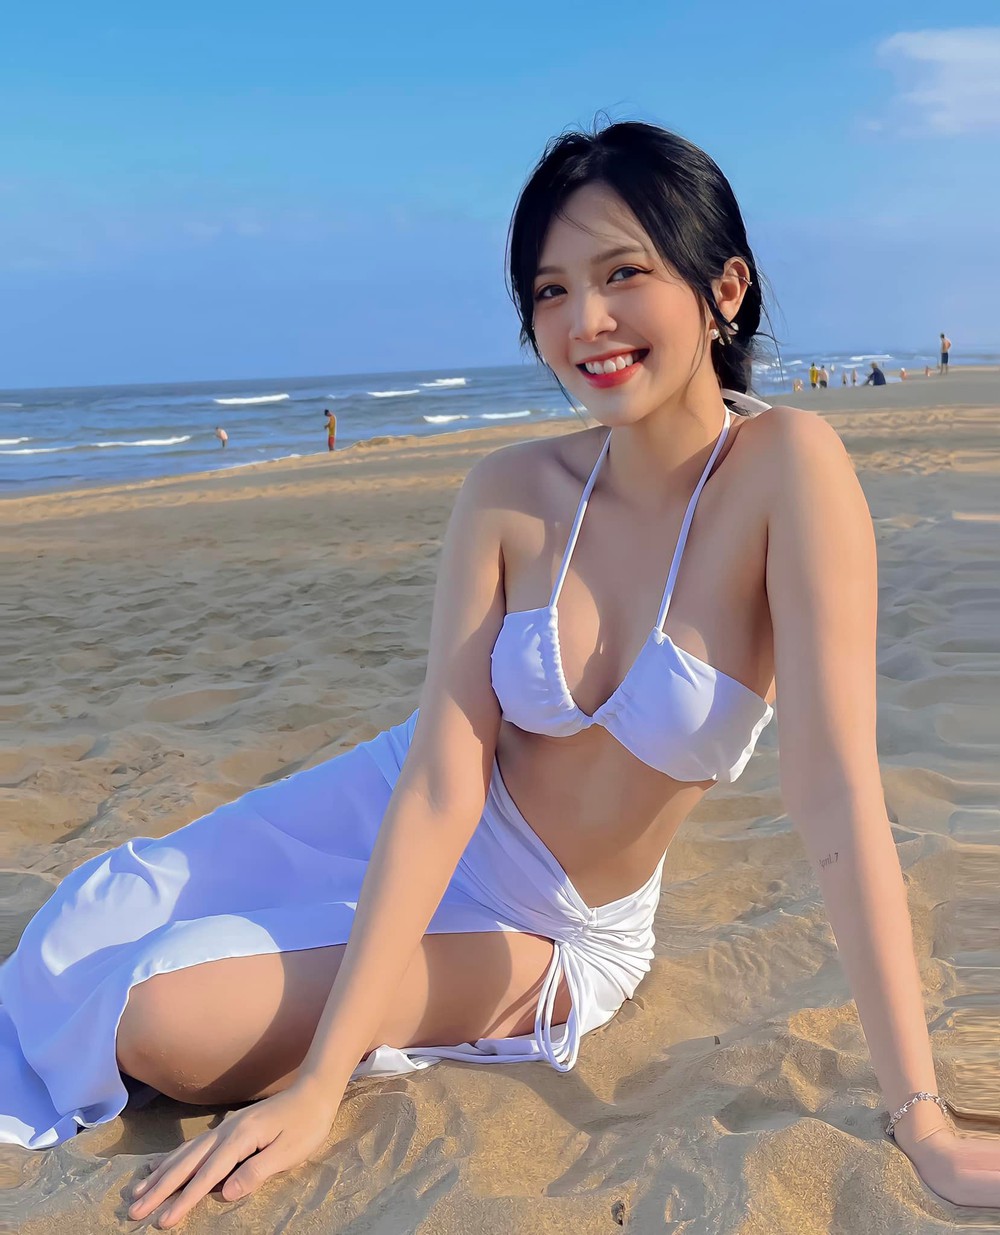 Con gái út NSƯT Hoàng Hải khoe vẻ gợi cảm với bikini - Ảnh 5.